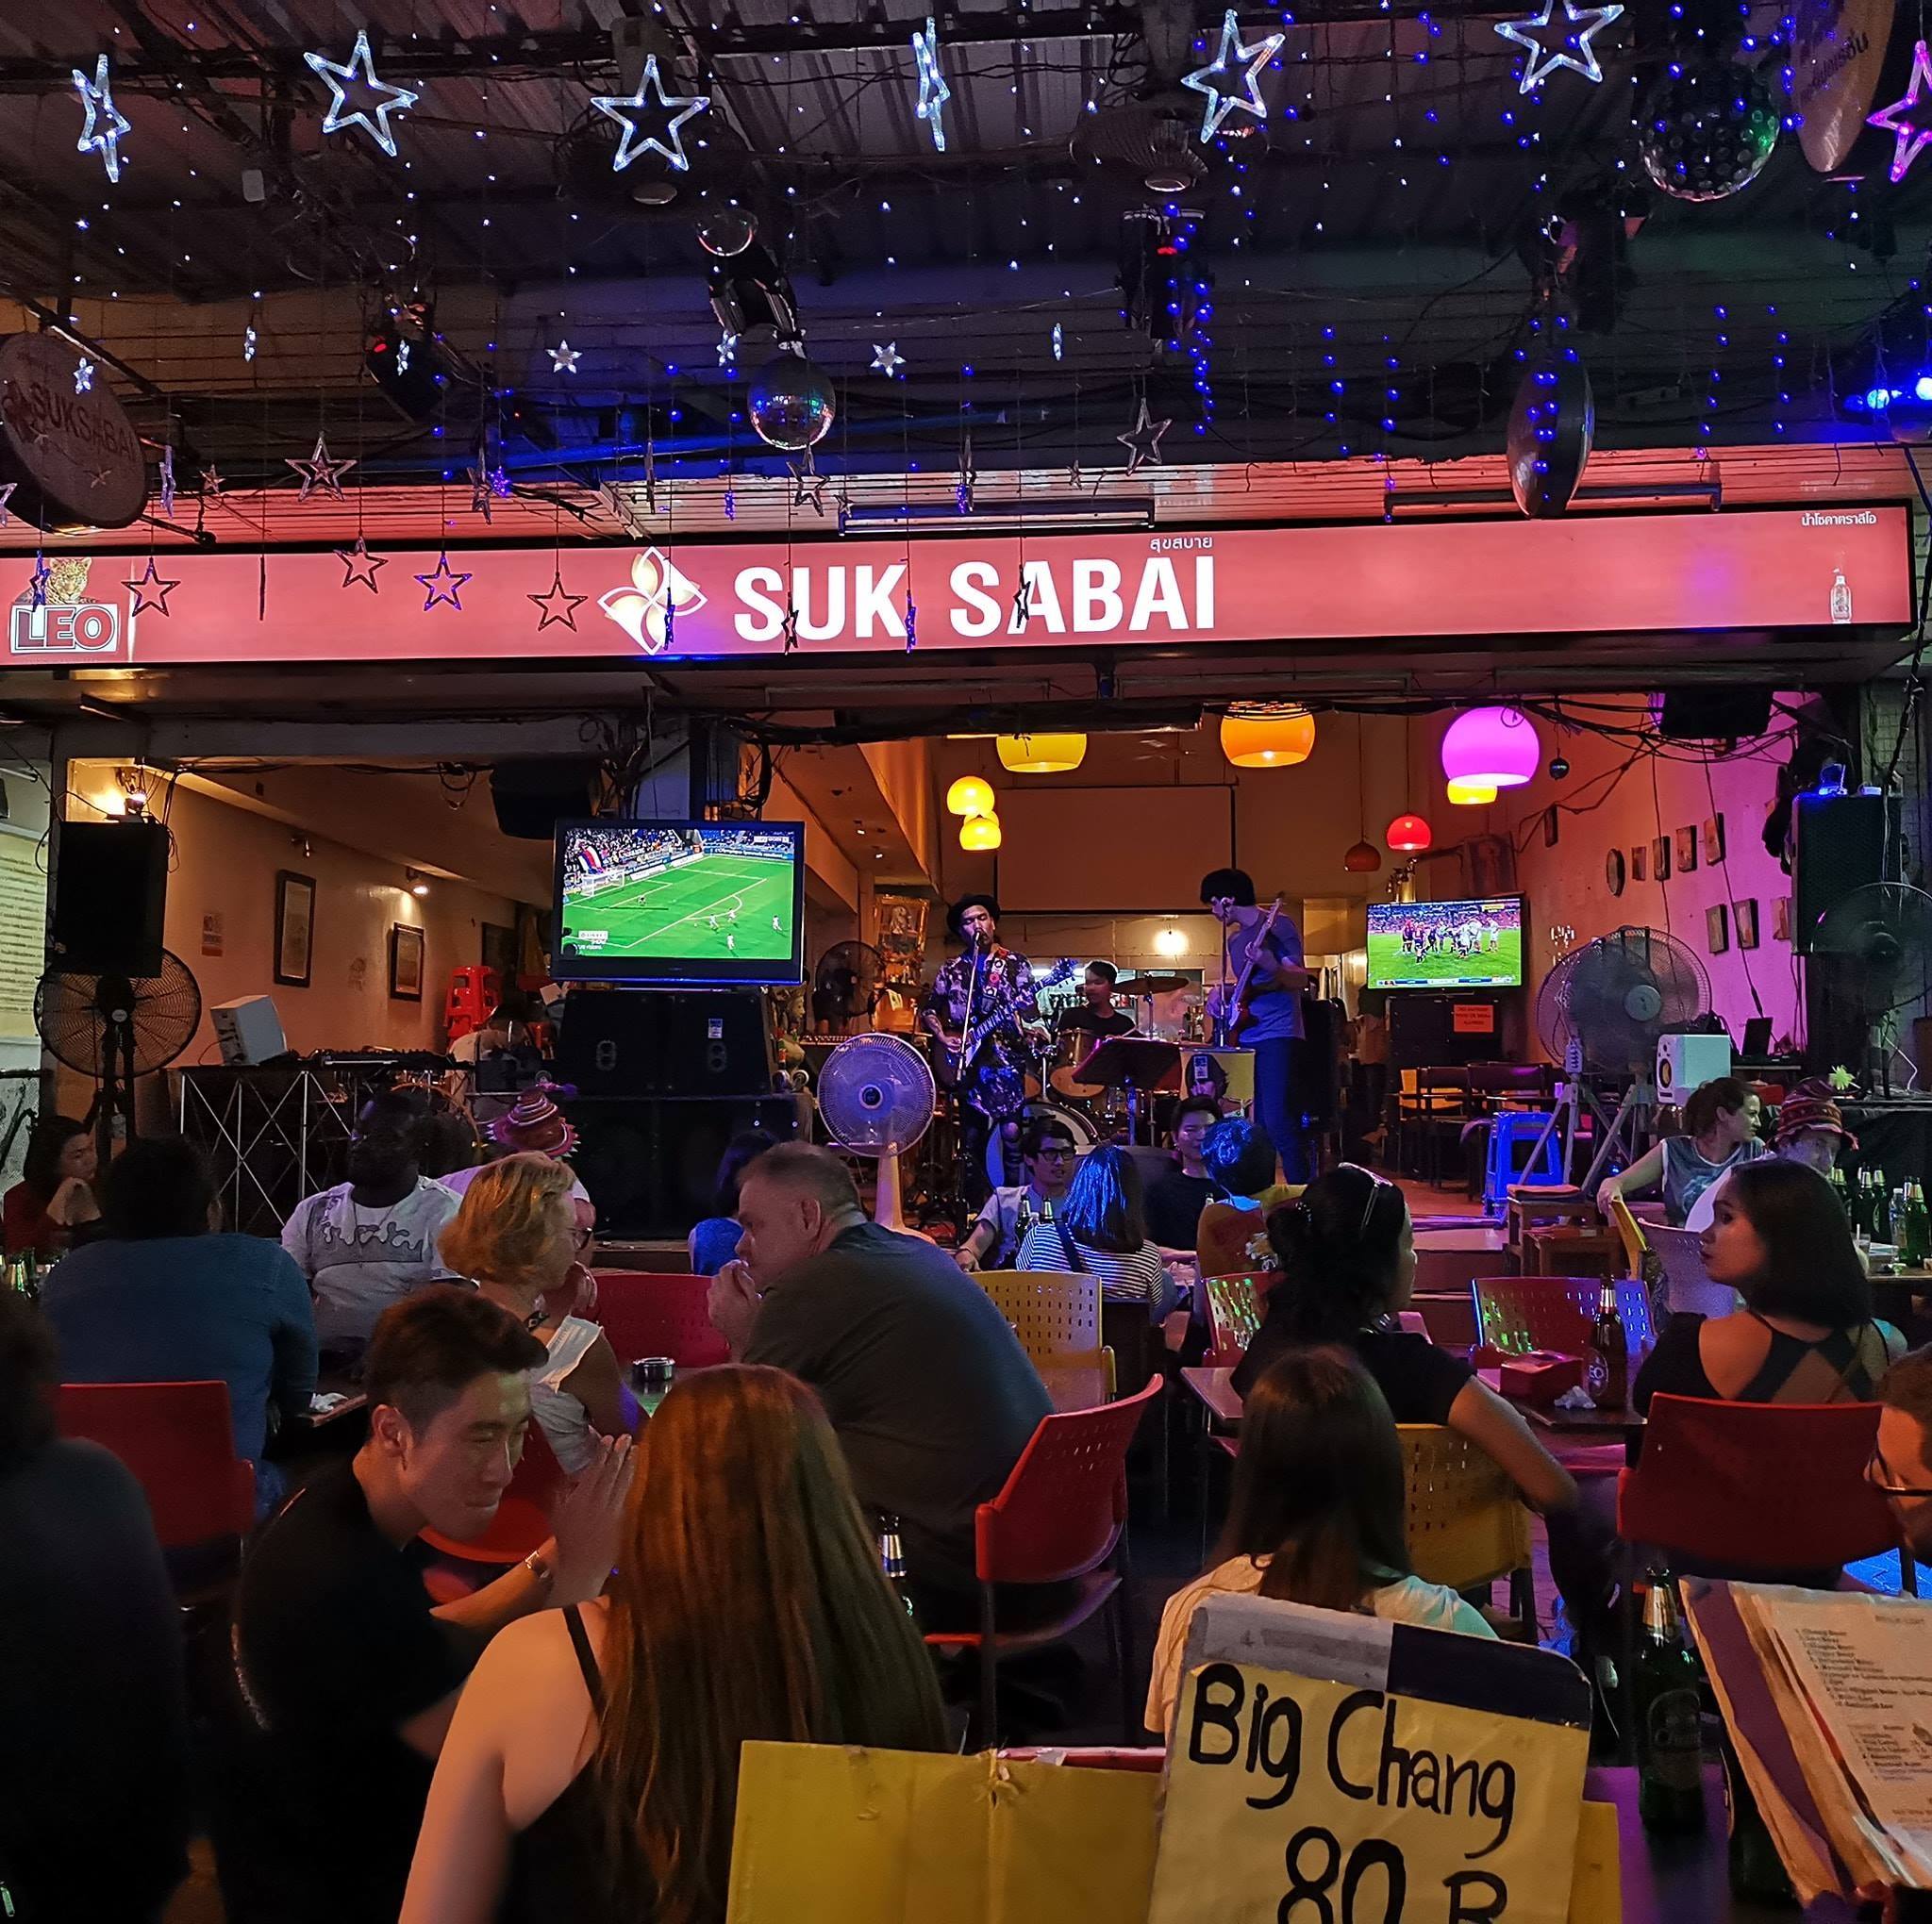 สุขสบาย บาร์ (Suksabai bar) : กรุงเทพมหานคร (Bangkok)